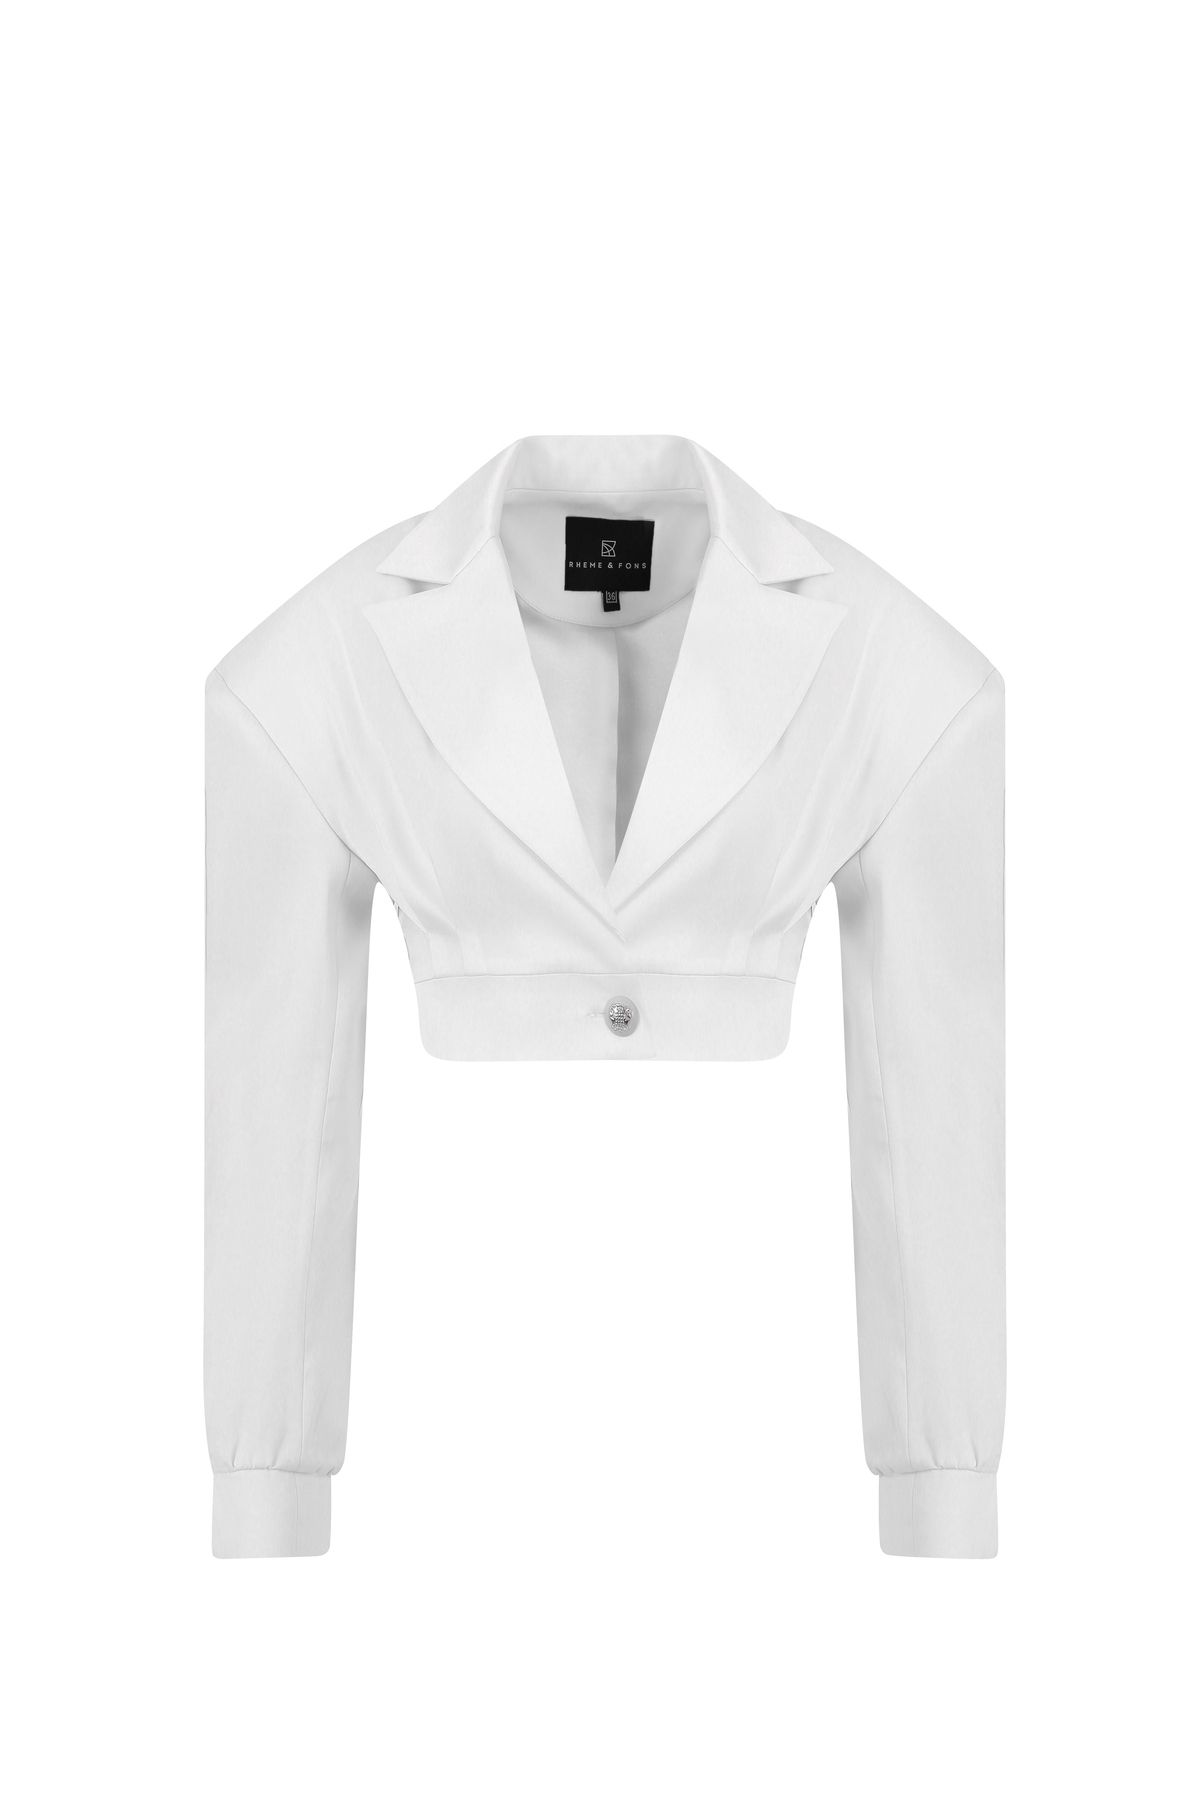 Rheme And Fons Özel Tasarım Couture El Işçiliği Düğme Detay Beyaz Kadın Blazer Ceket